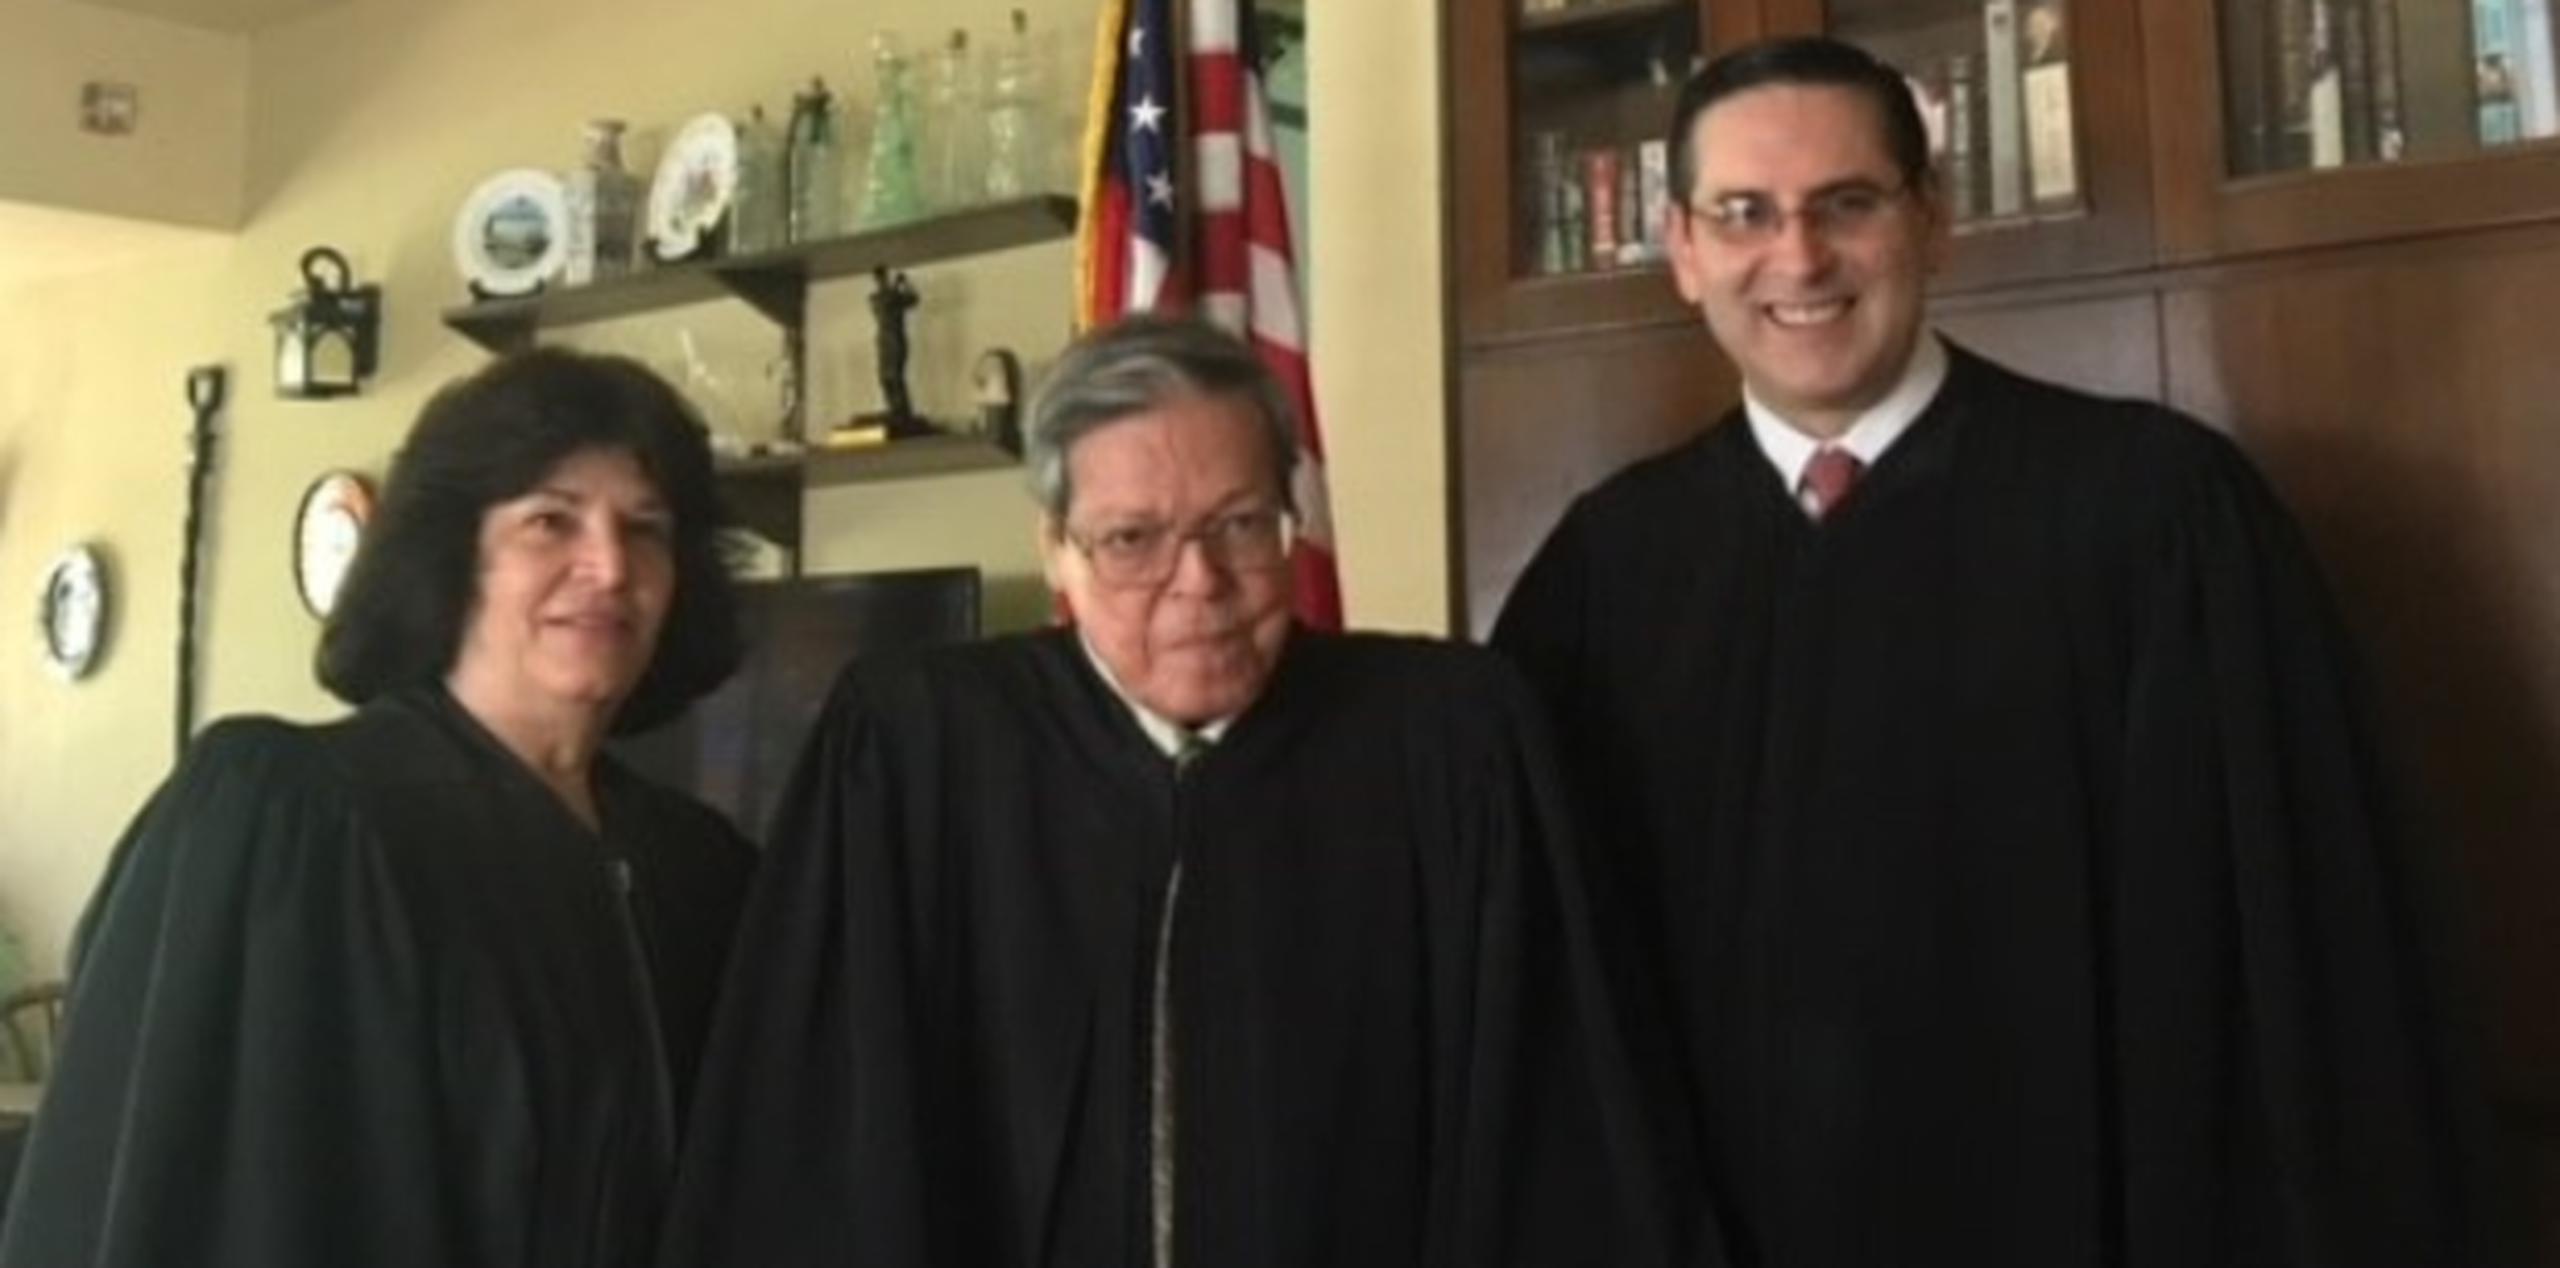 Gelpí, a la derecha, junto al juez Pérez Giménez y la jueza Delgado Colón. (Suministrada)